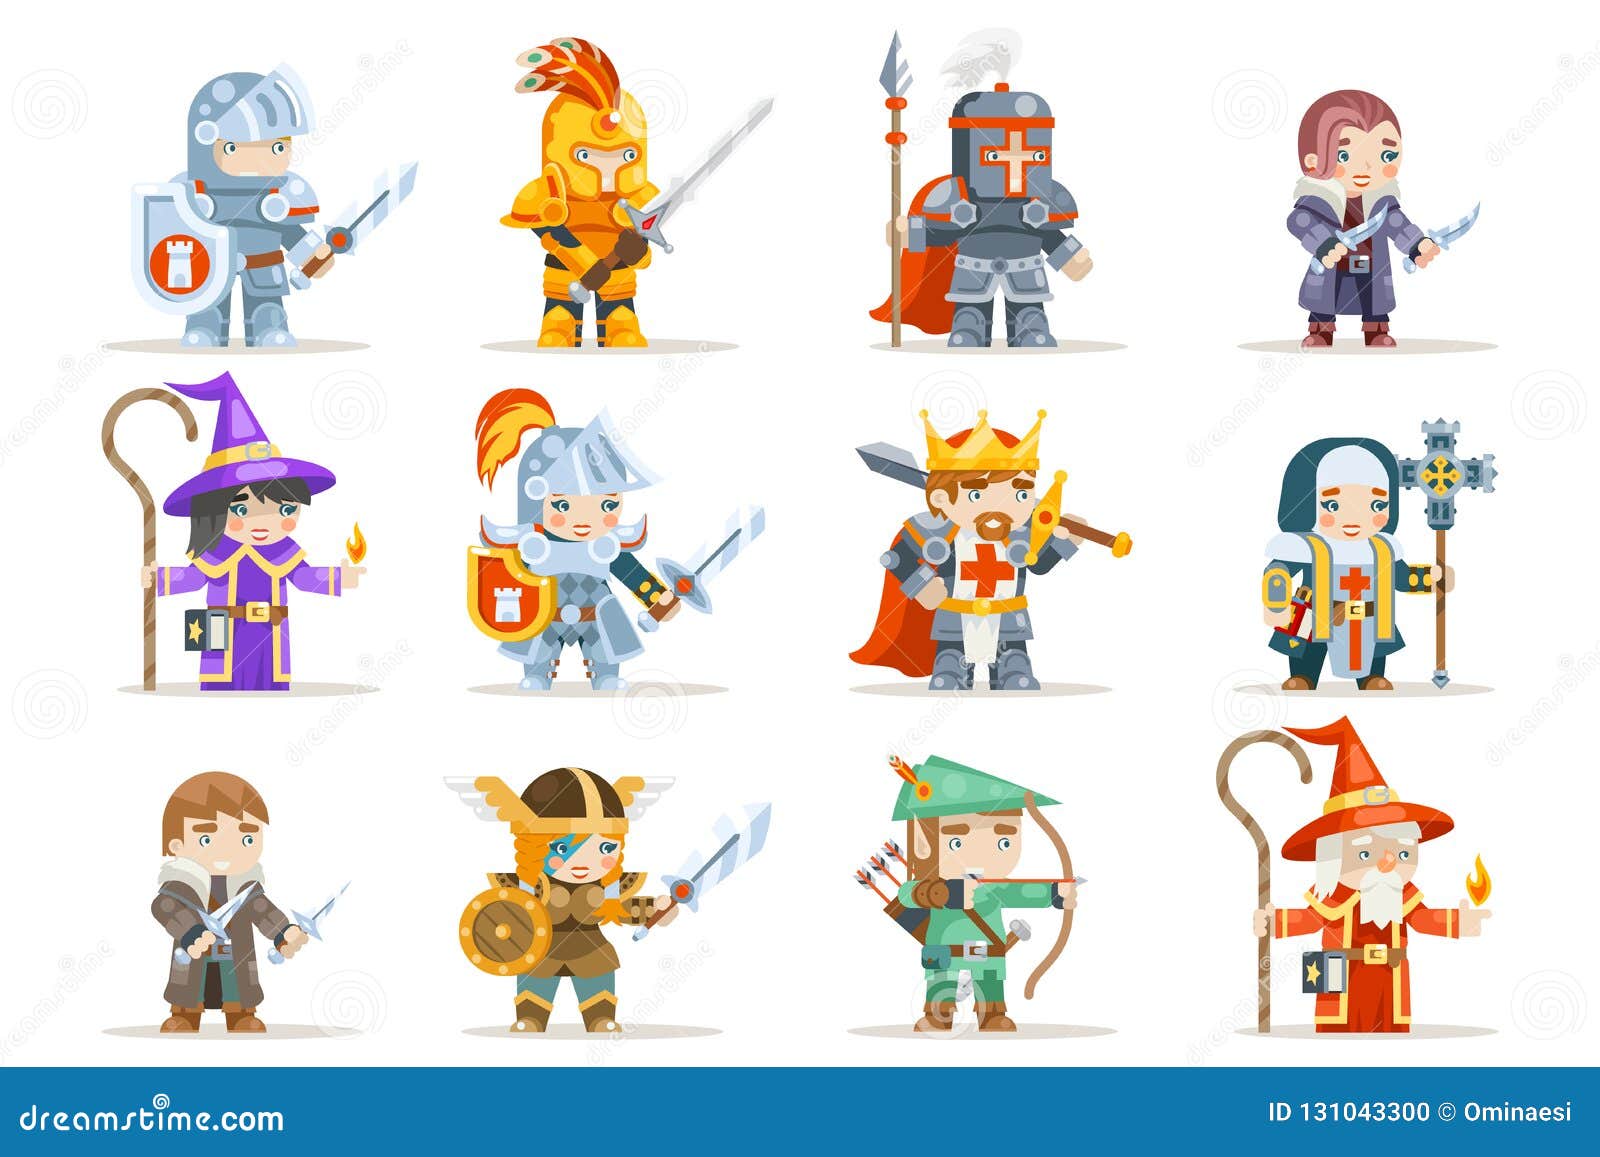 Fantasia RPG Jogo Personagens Monstros E Heróis Ilustração De